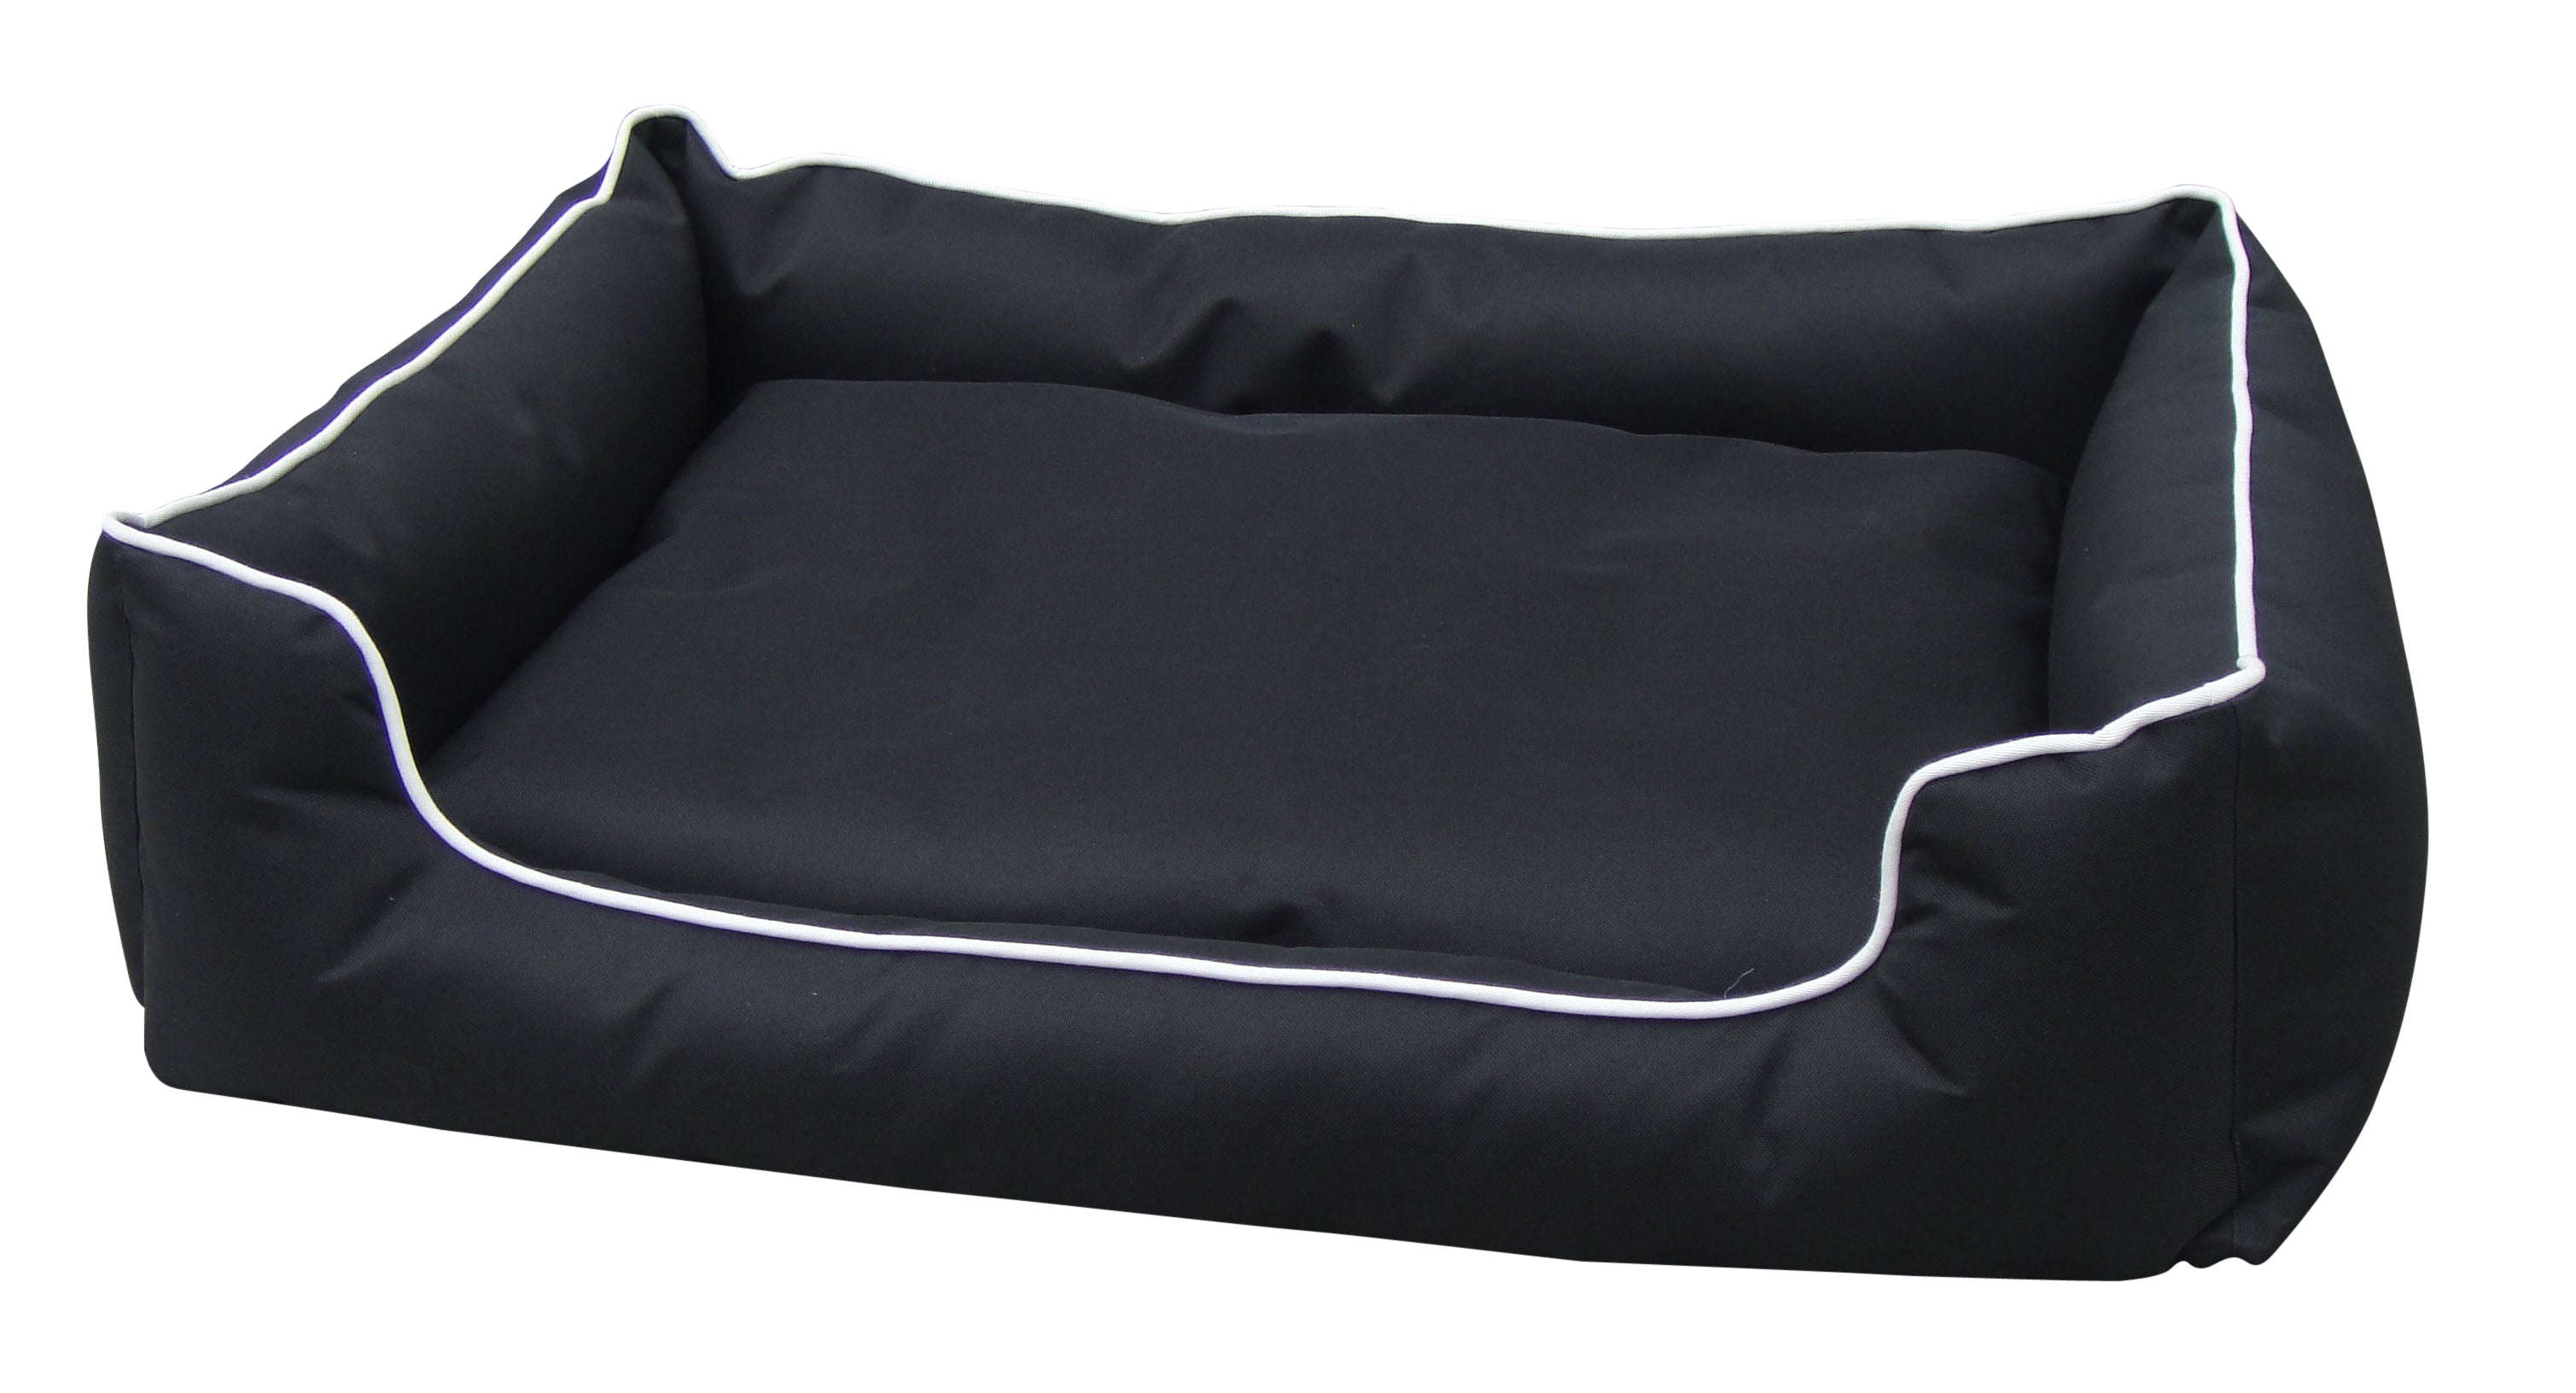 Heavy Duty Waterproof Dog Bed - Large